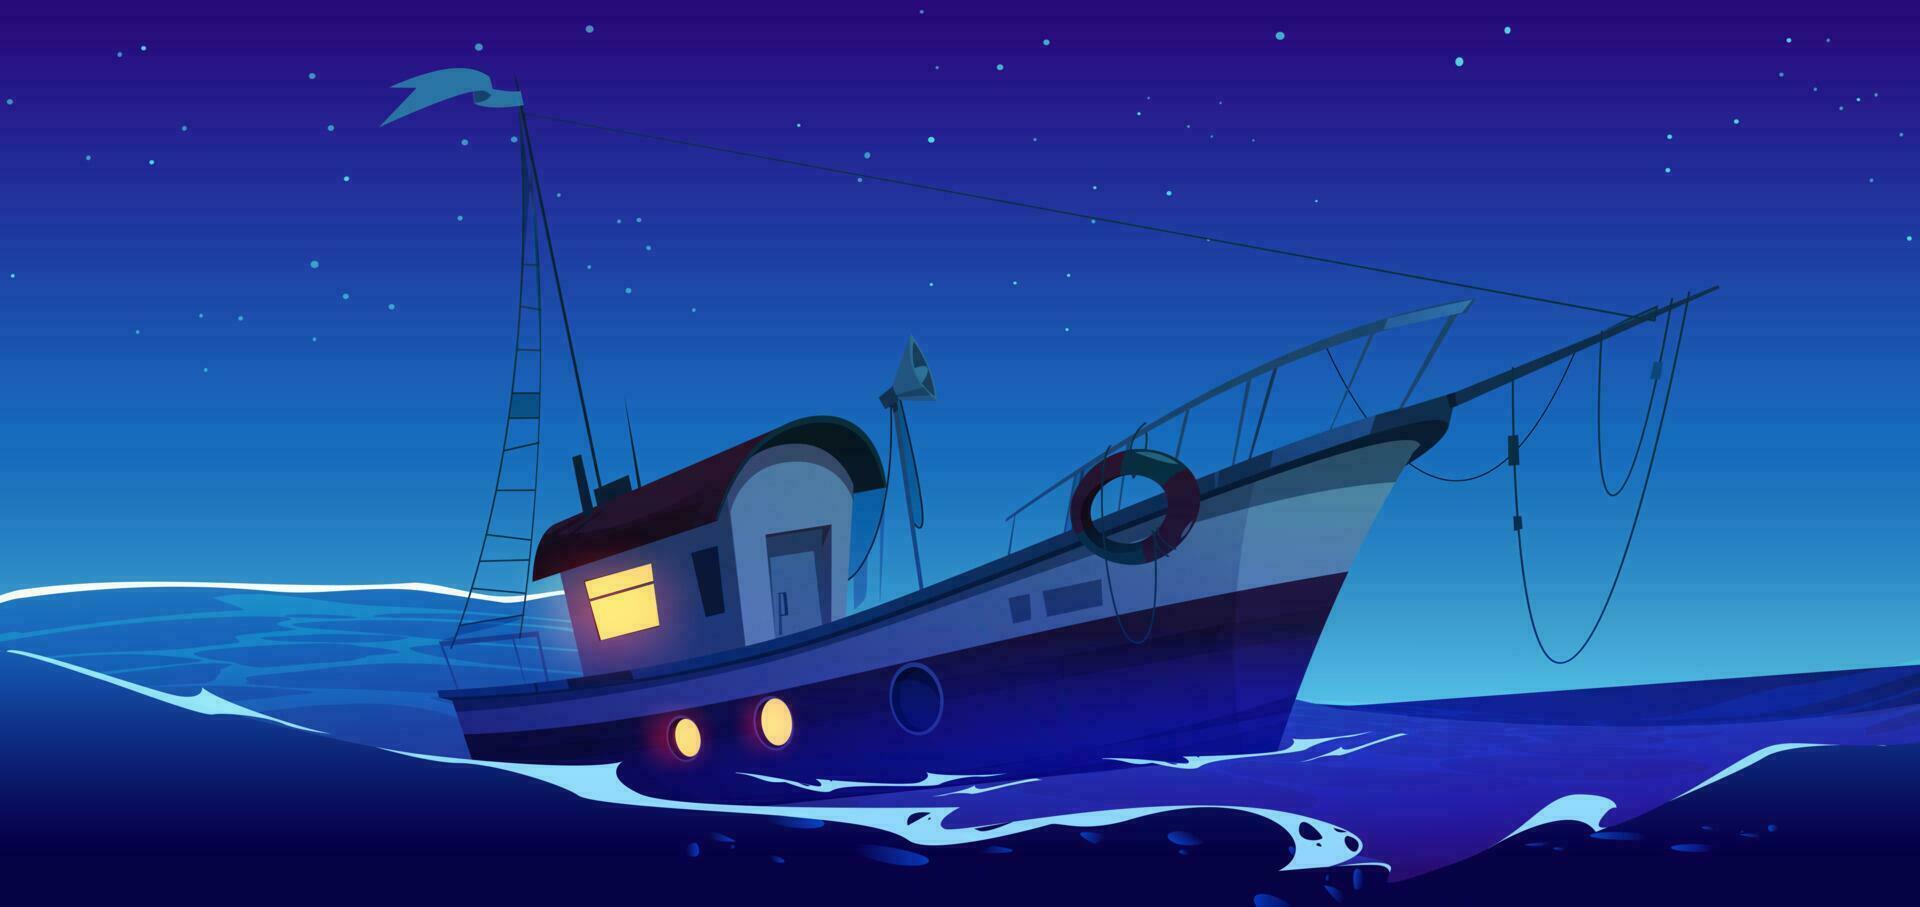 pescar barco en mar o Oceano a noche vector